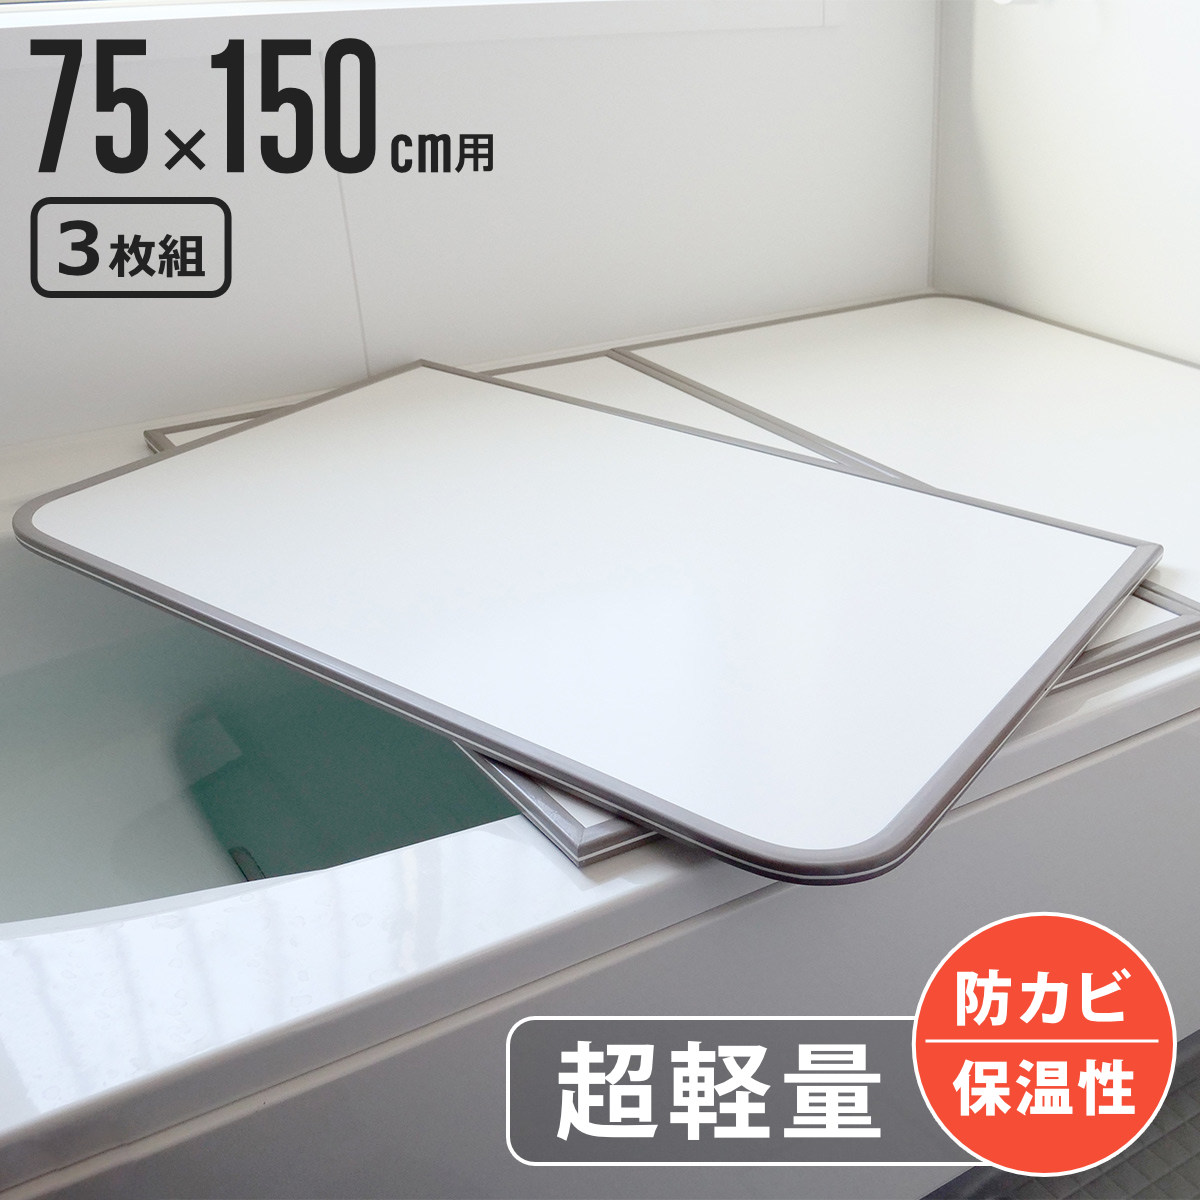  風呂ふた 組み合わせ 軽量 カビの生えにくい風呂ふた L-15 75×150cm 実寸73×148cm 3枚組